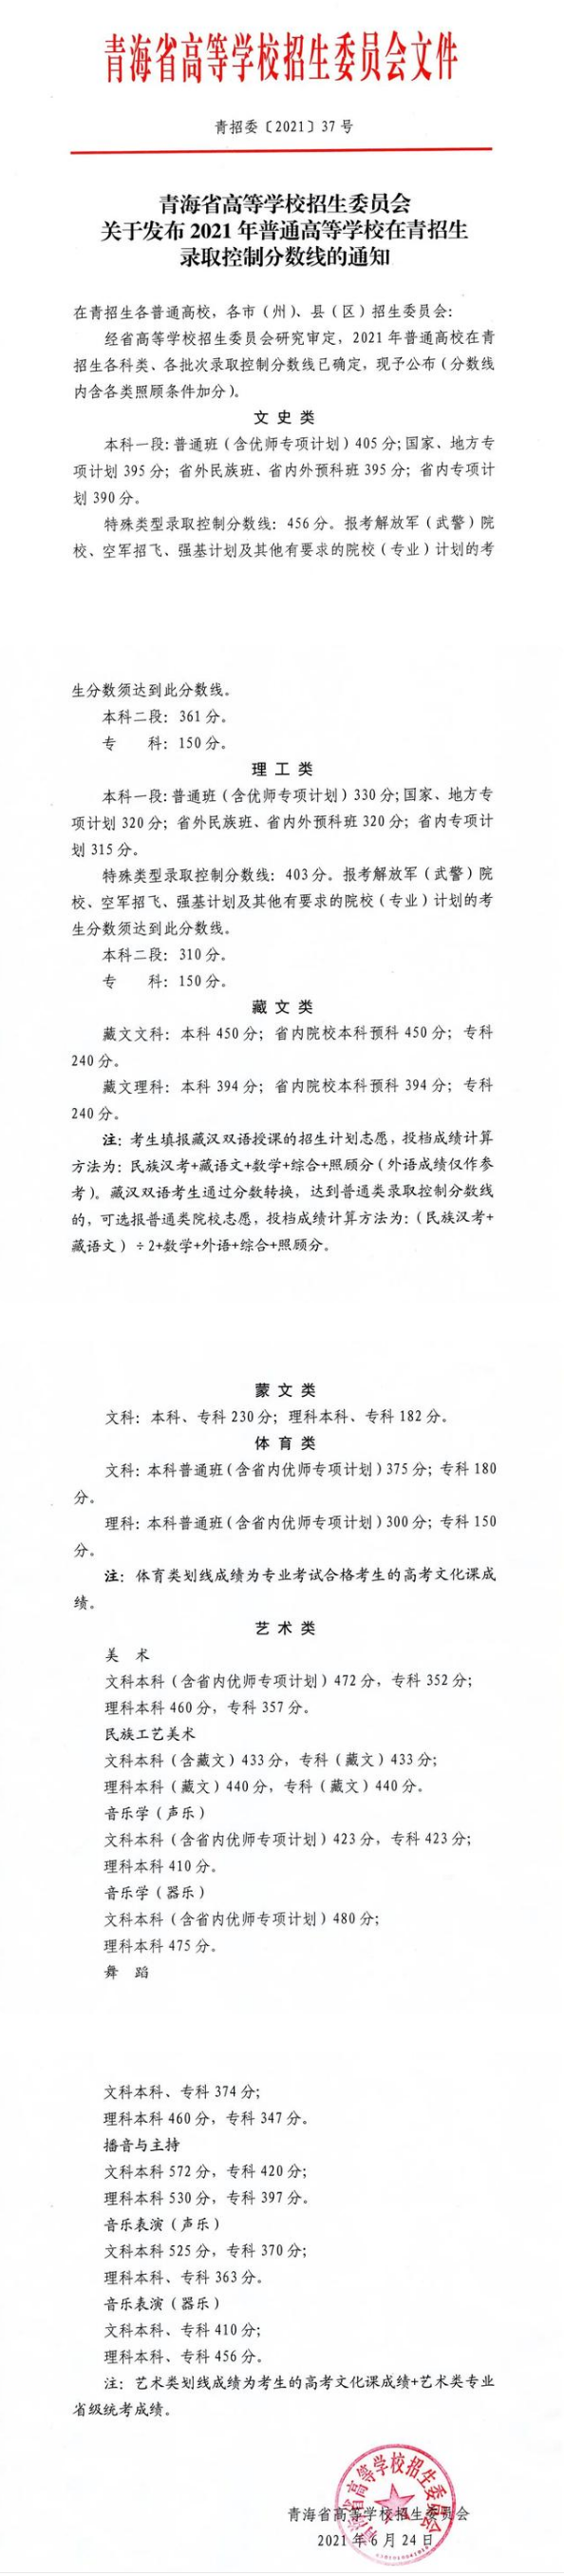 2021青海省高考录取分数线公布